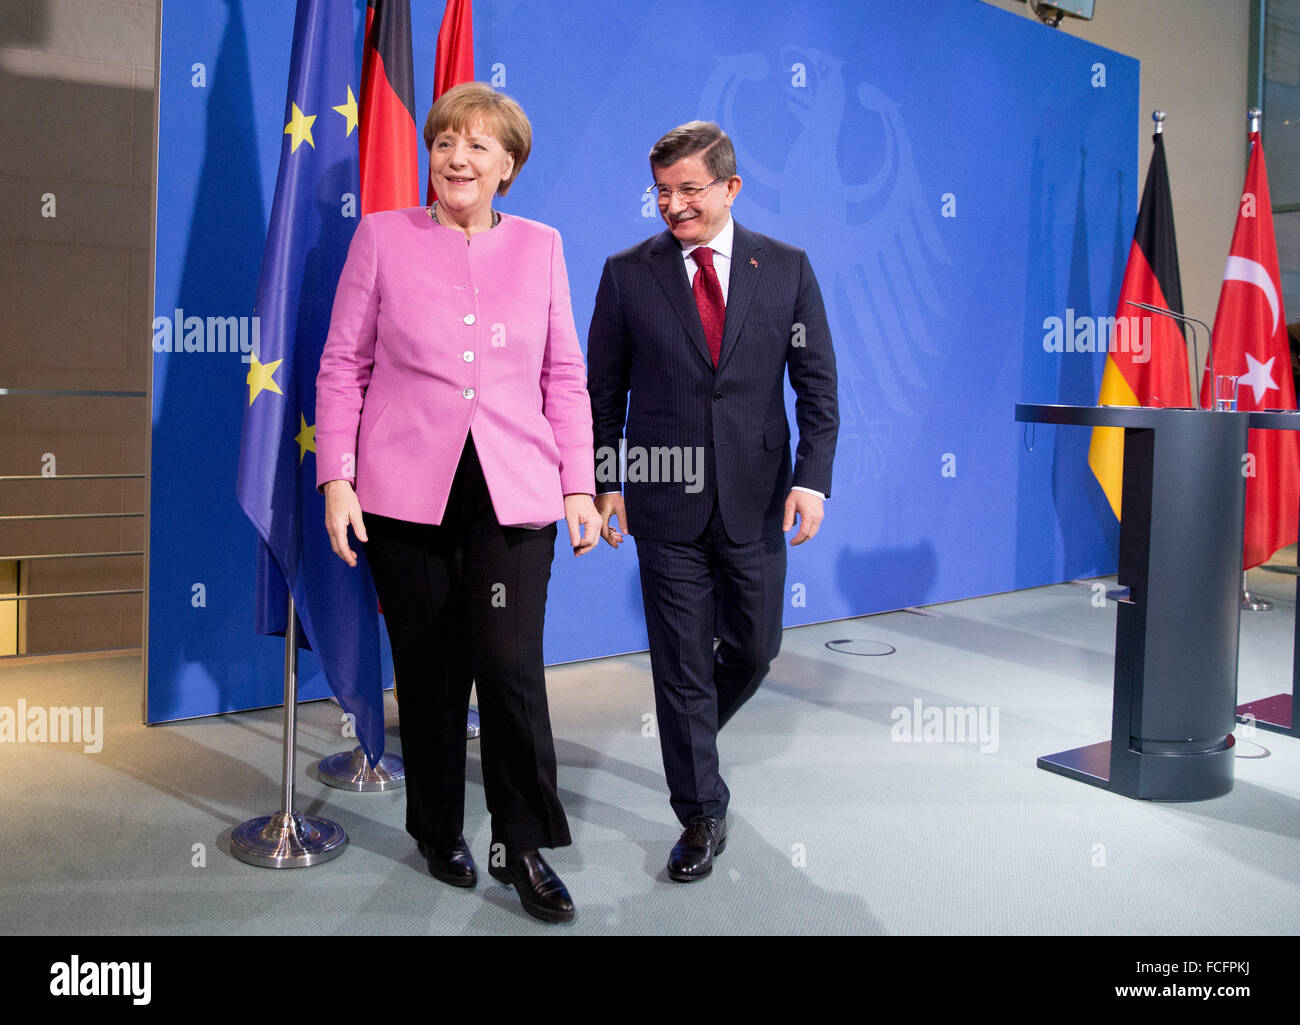 Berlin, Allemagne. 22 janvier, 2016. La chancelière allemande, Angela Merkel (CDU) et le Premier ministre turc Ahmet Davutoglu en discussion au cours d'une conférence de presse à la chancellerie allemande à Berlin, Allemagne, 22 janvier 2016. Les politiciens s'est entretenu pour discuter de sujets concernant la lutte contre le terrorisme et les réfugiés politiques durant la première des consultations intergouvernementales germano-turque. PHOTO : KAY NIETFELD/dpa/Alamy Live News Banque D'Images